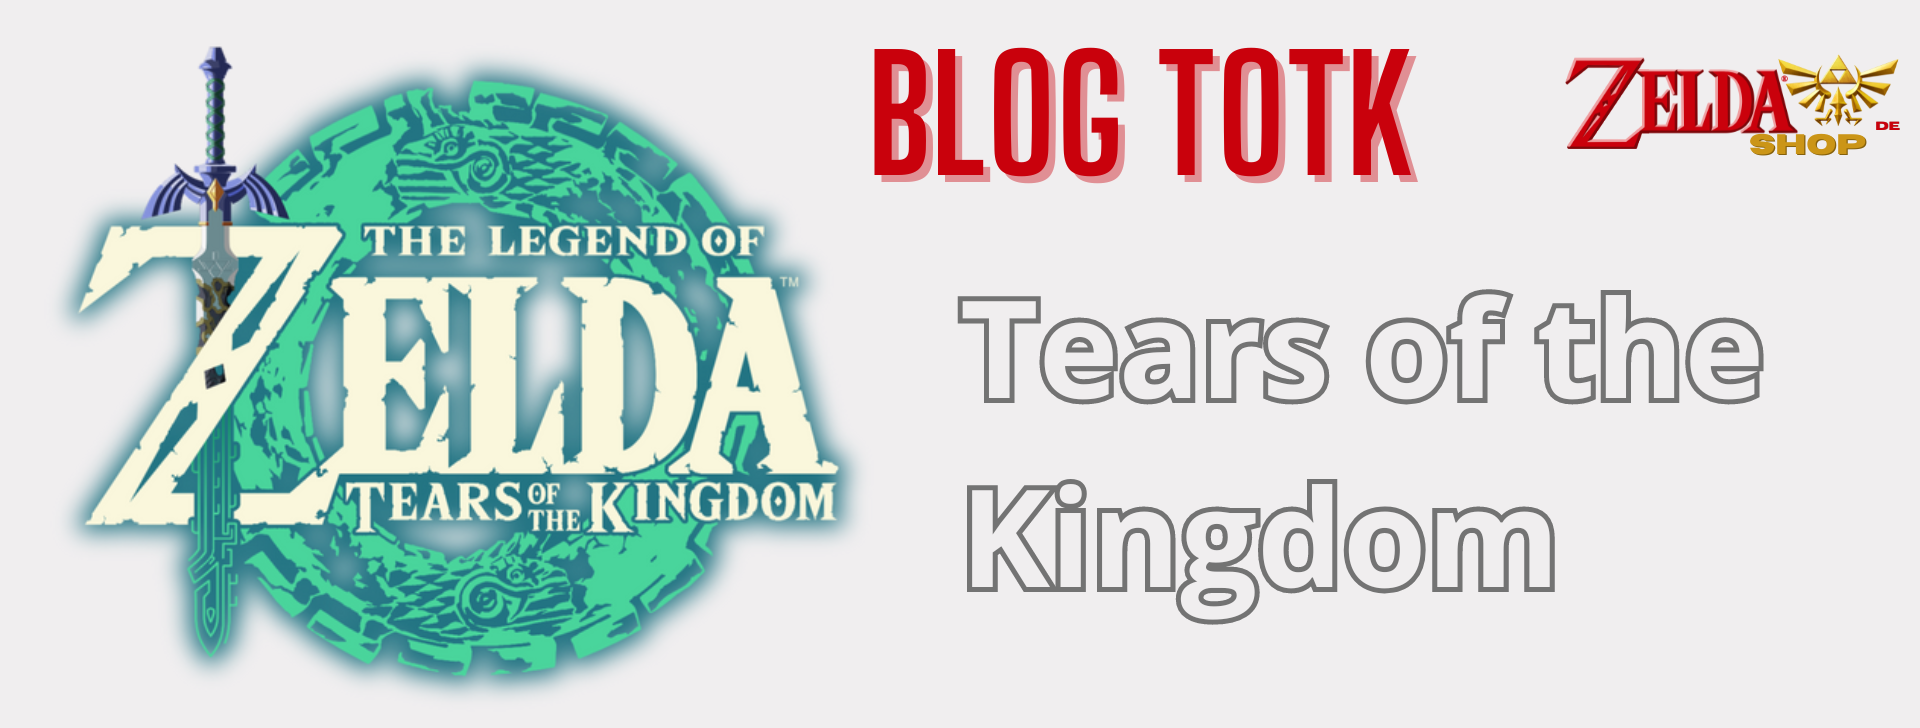 Zelda Totk Blog Tears of the Kingdom